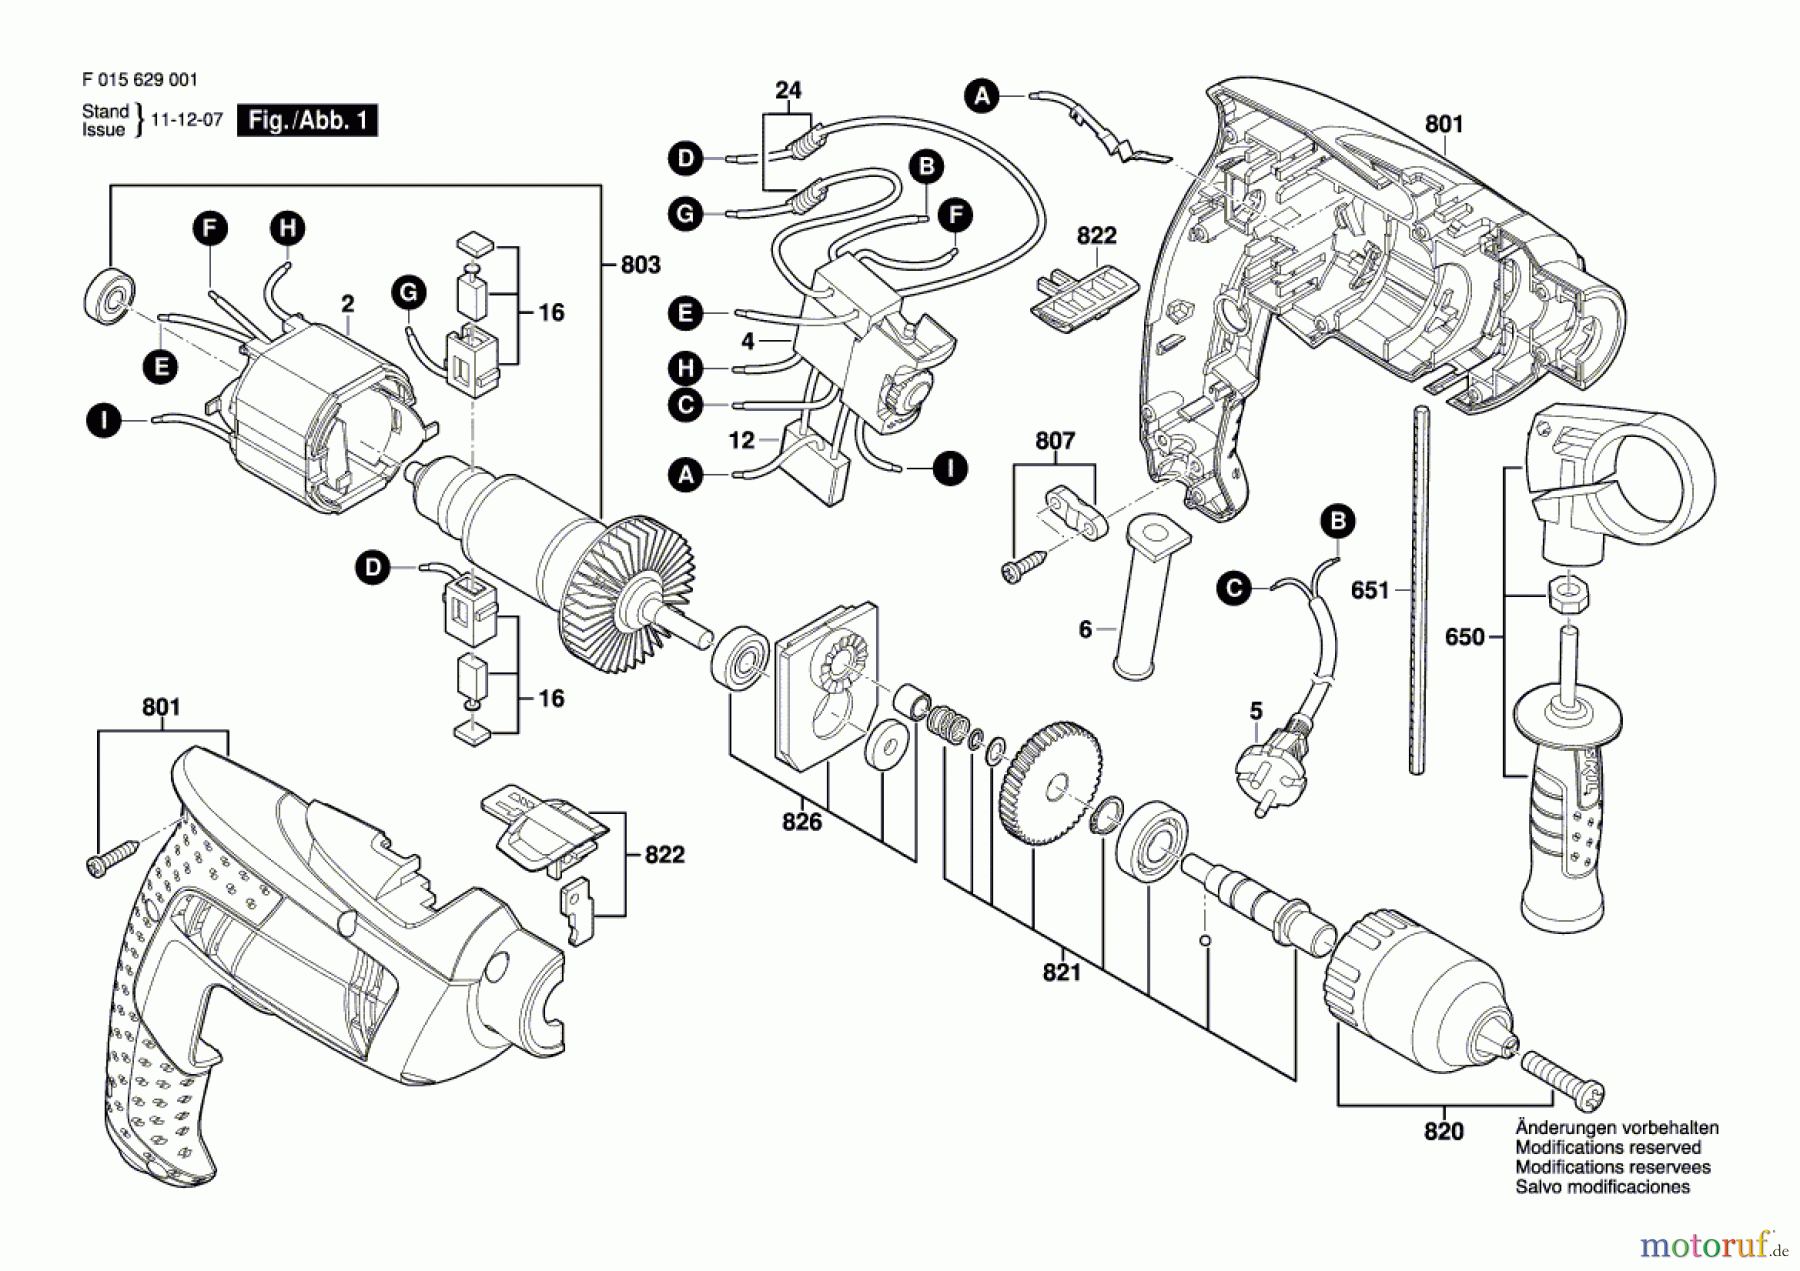  Bosch Werkzeug Schlagbohrmaschine 6290 Seite 1